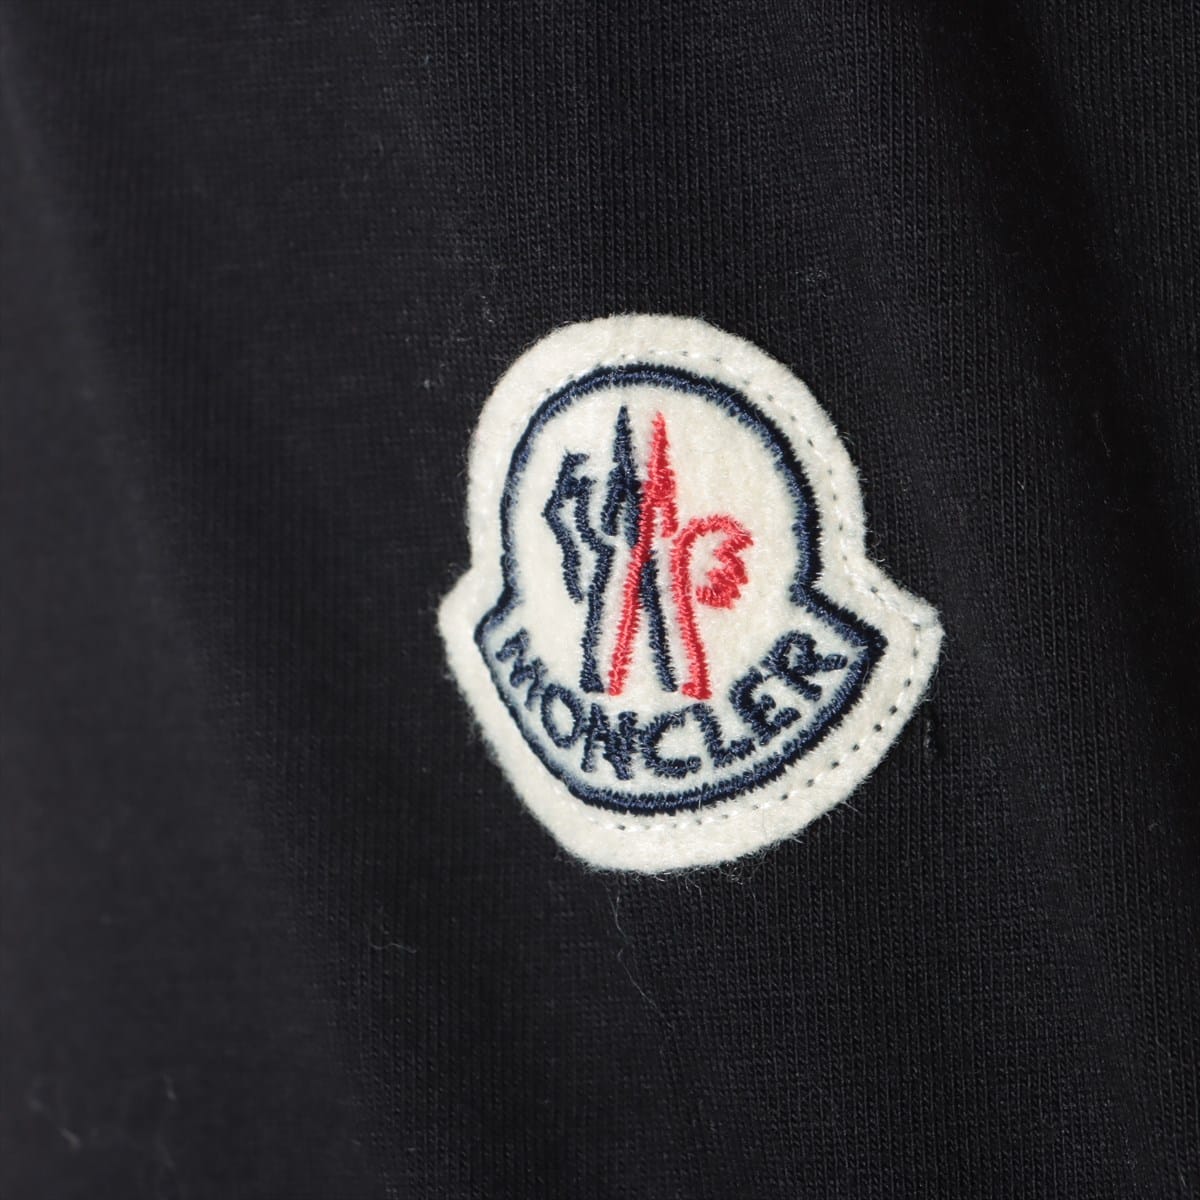 モンクレール MAGLIA 15年 コットン Tシャツ L メンズ ブラック  ワッペン